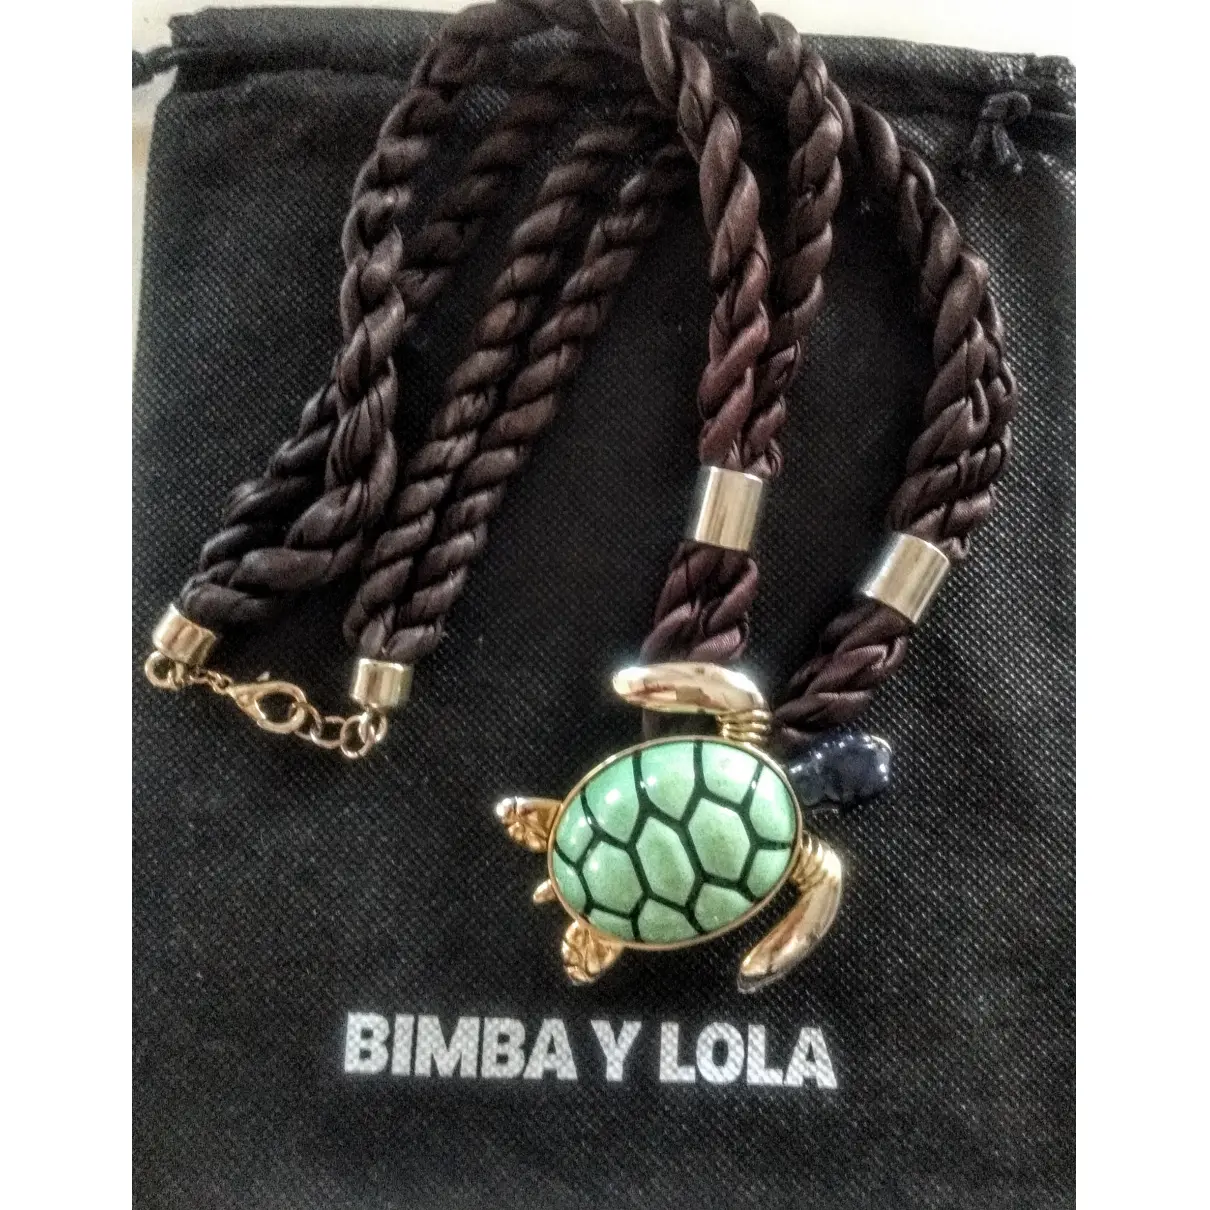 Buy Bimba y Lola Long necklace online